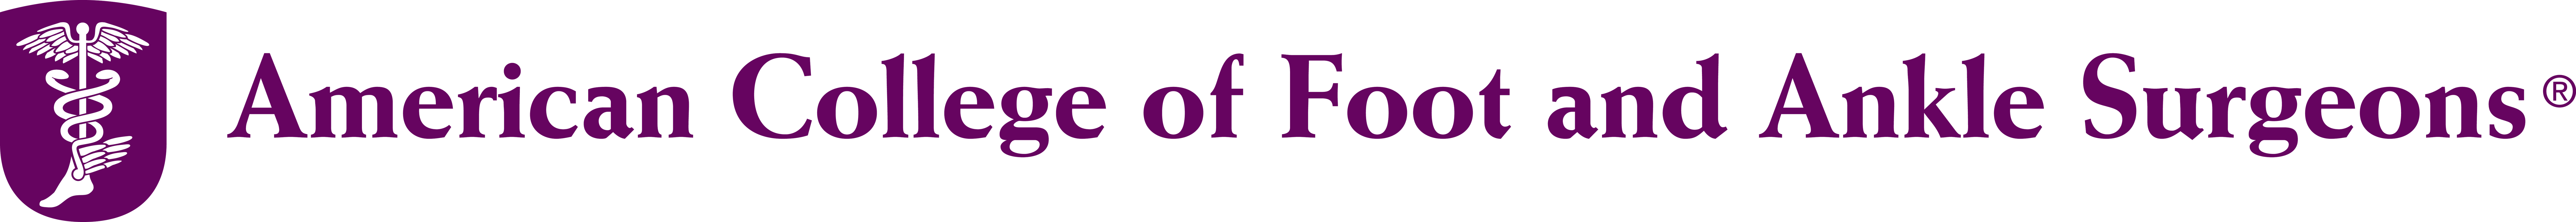 ACFAS Logo